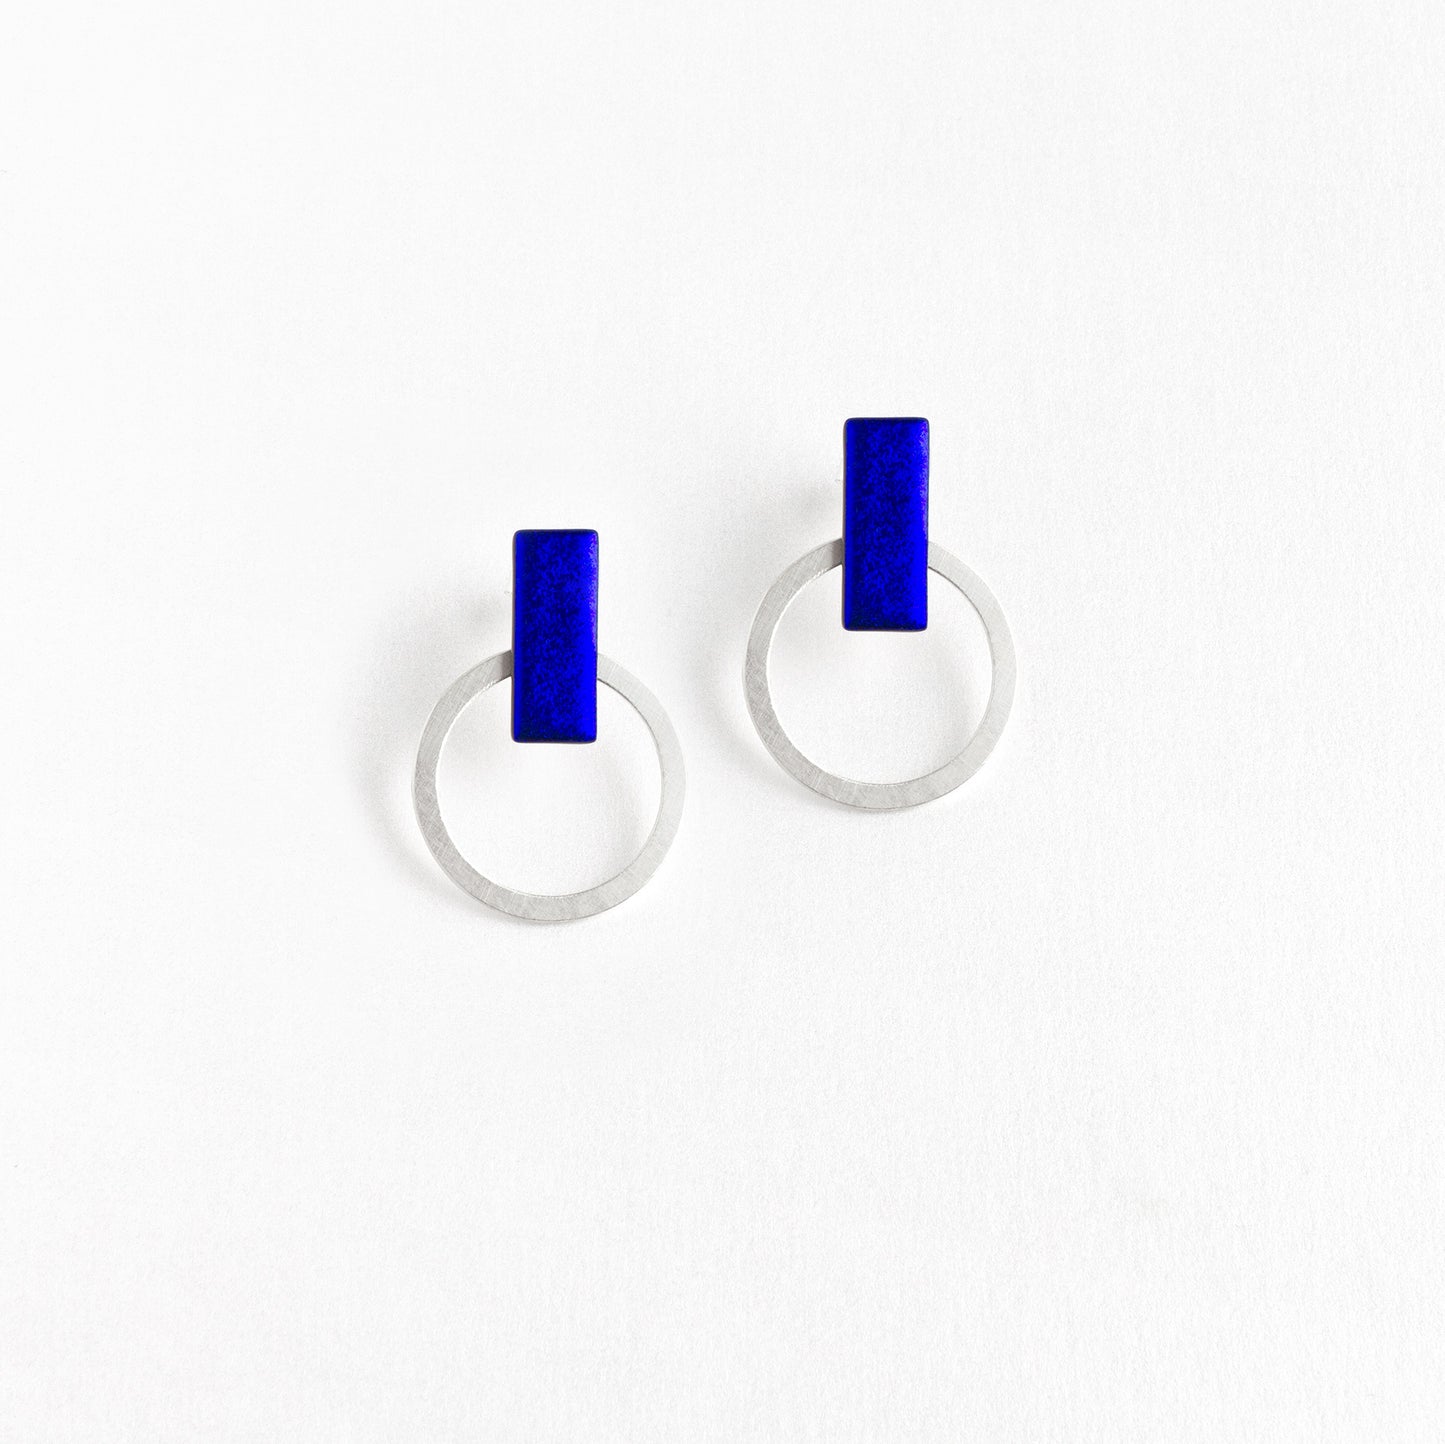 Dichroic Blue Circle Earrings